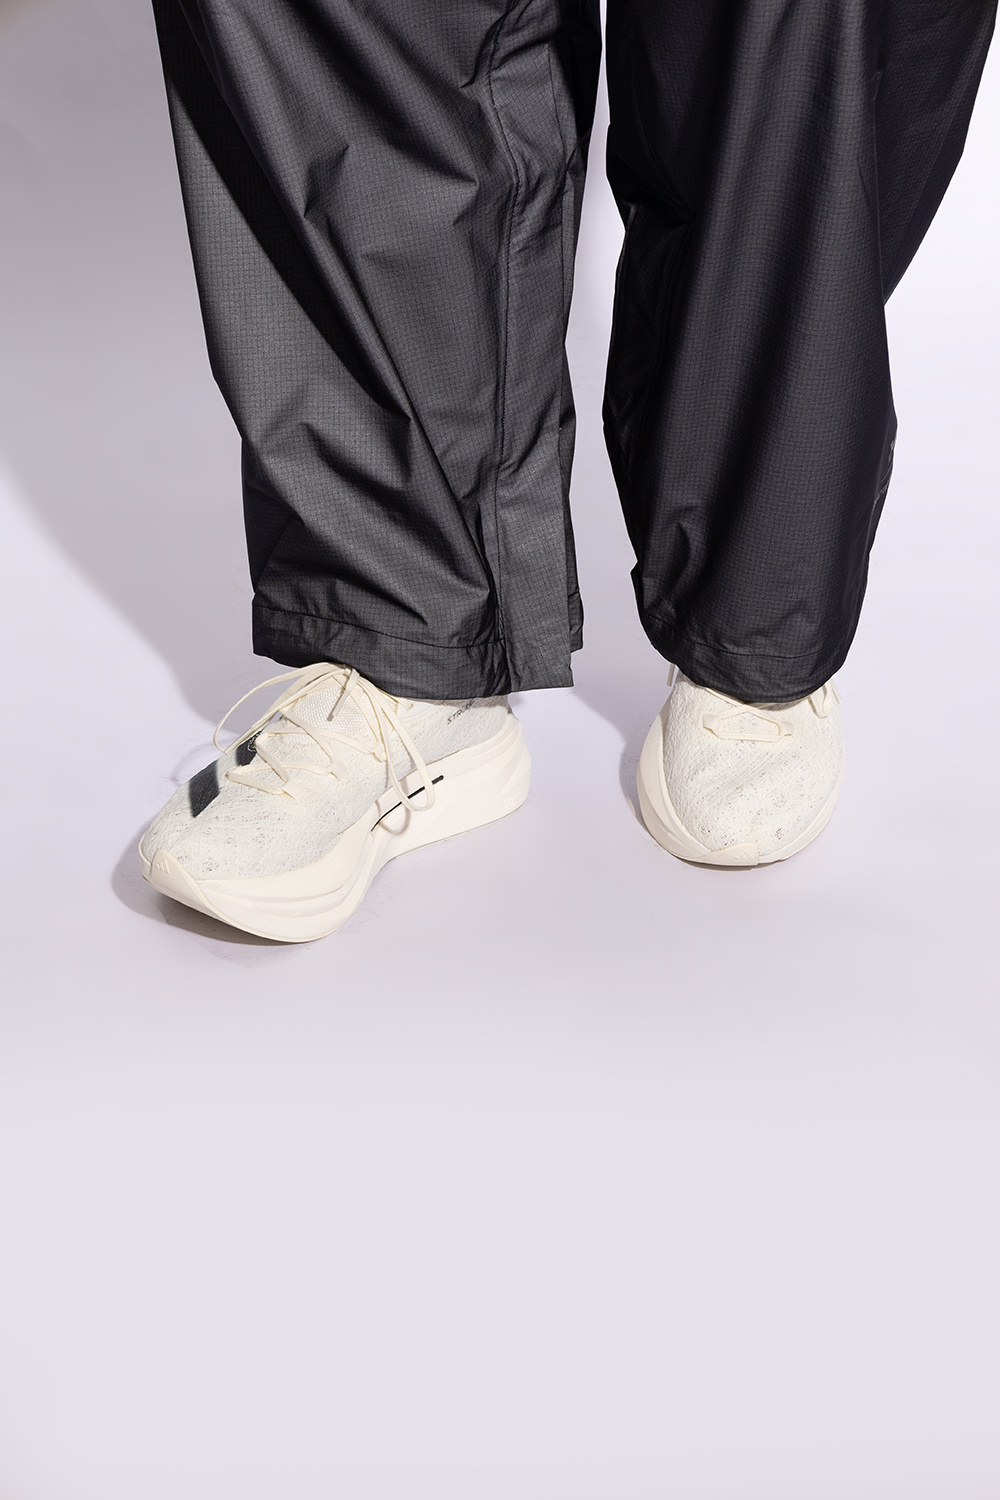 Y-3 Yohji Yamamoto 'Prime X 2 Strung' sneakers | Men's Shoes | Vitkac